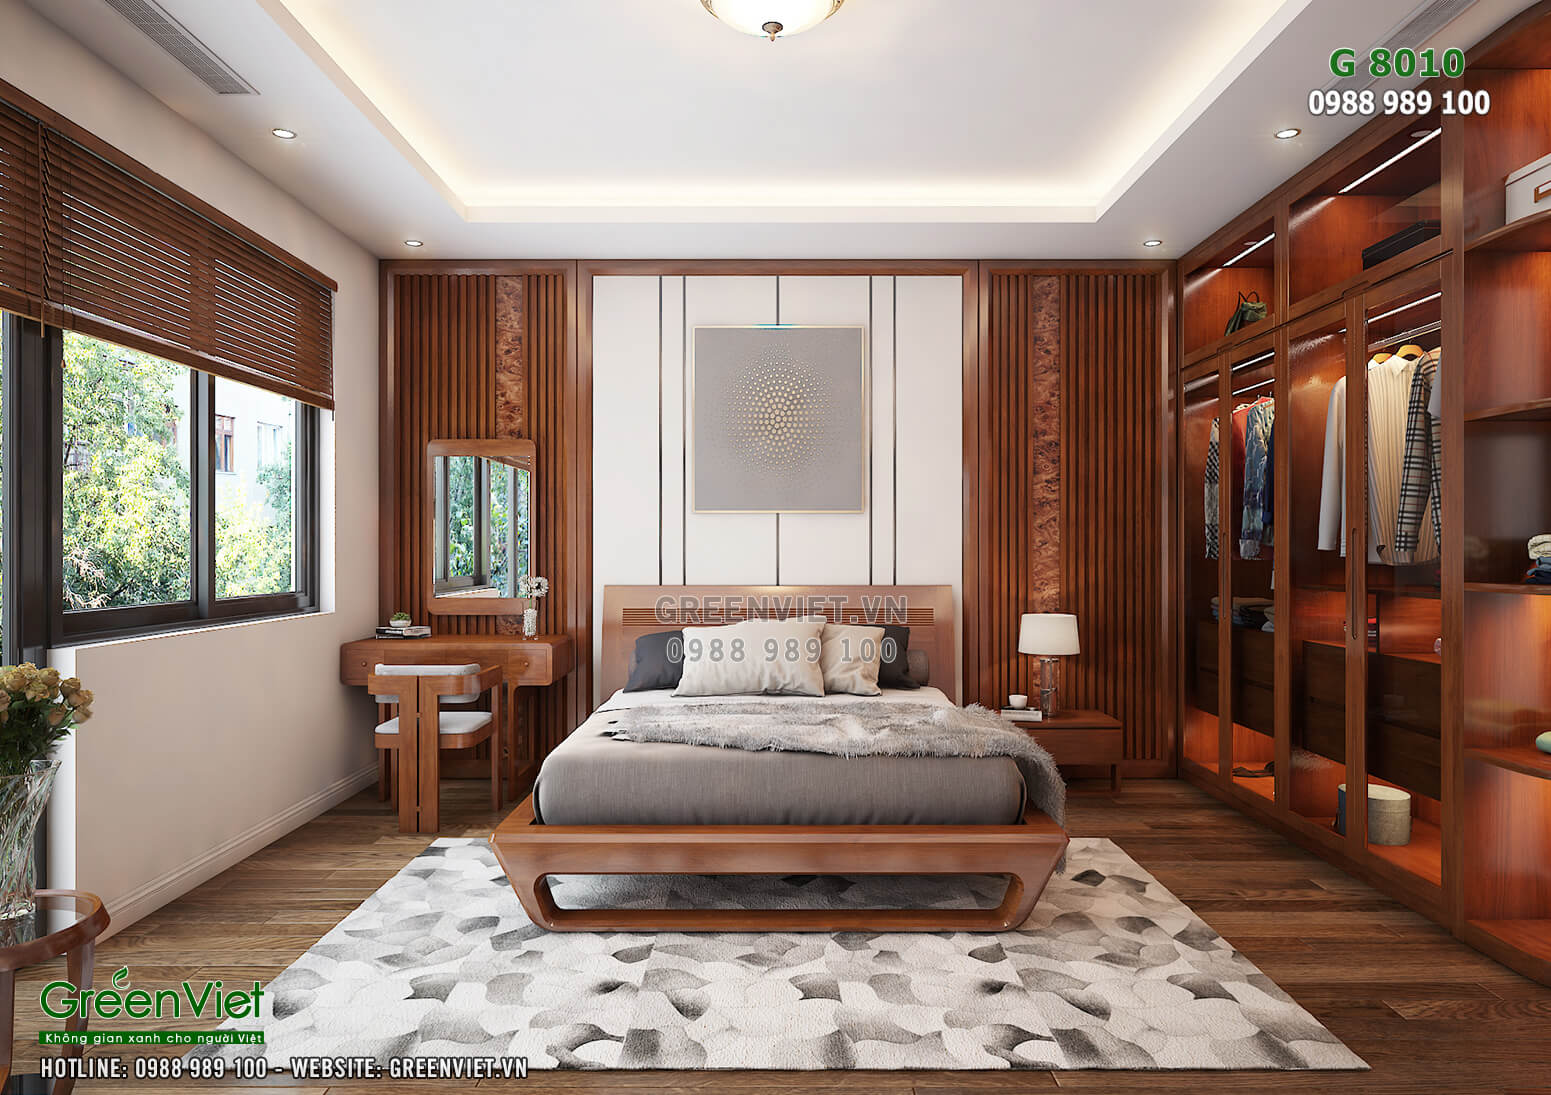 Thiết kế phòng khách với phong cách kiến trúc hiện đại kết hợp đồ nội thất gỗ